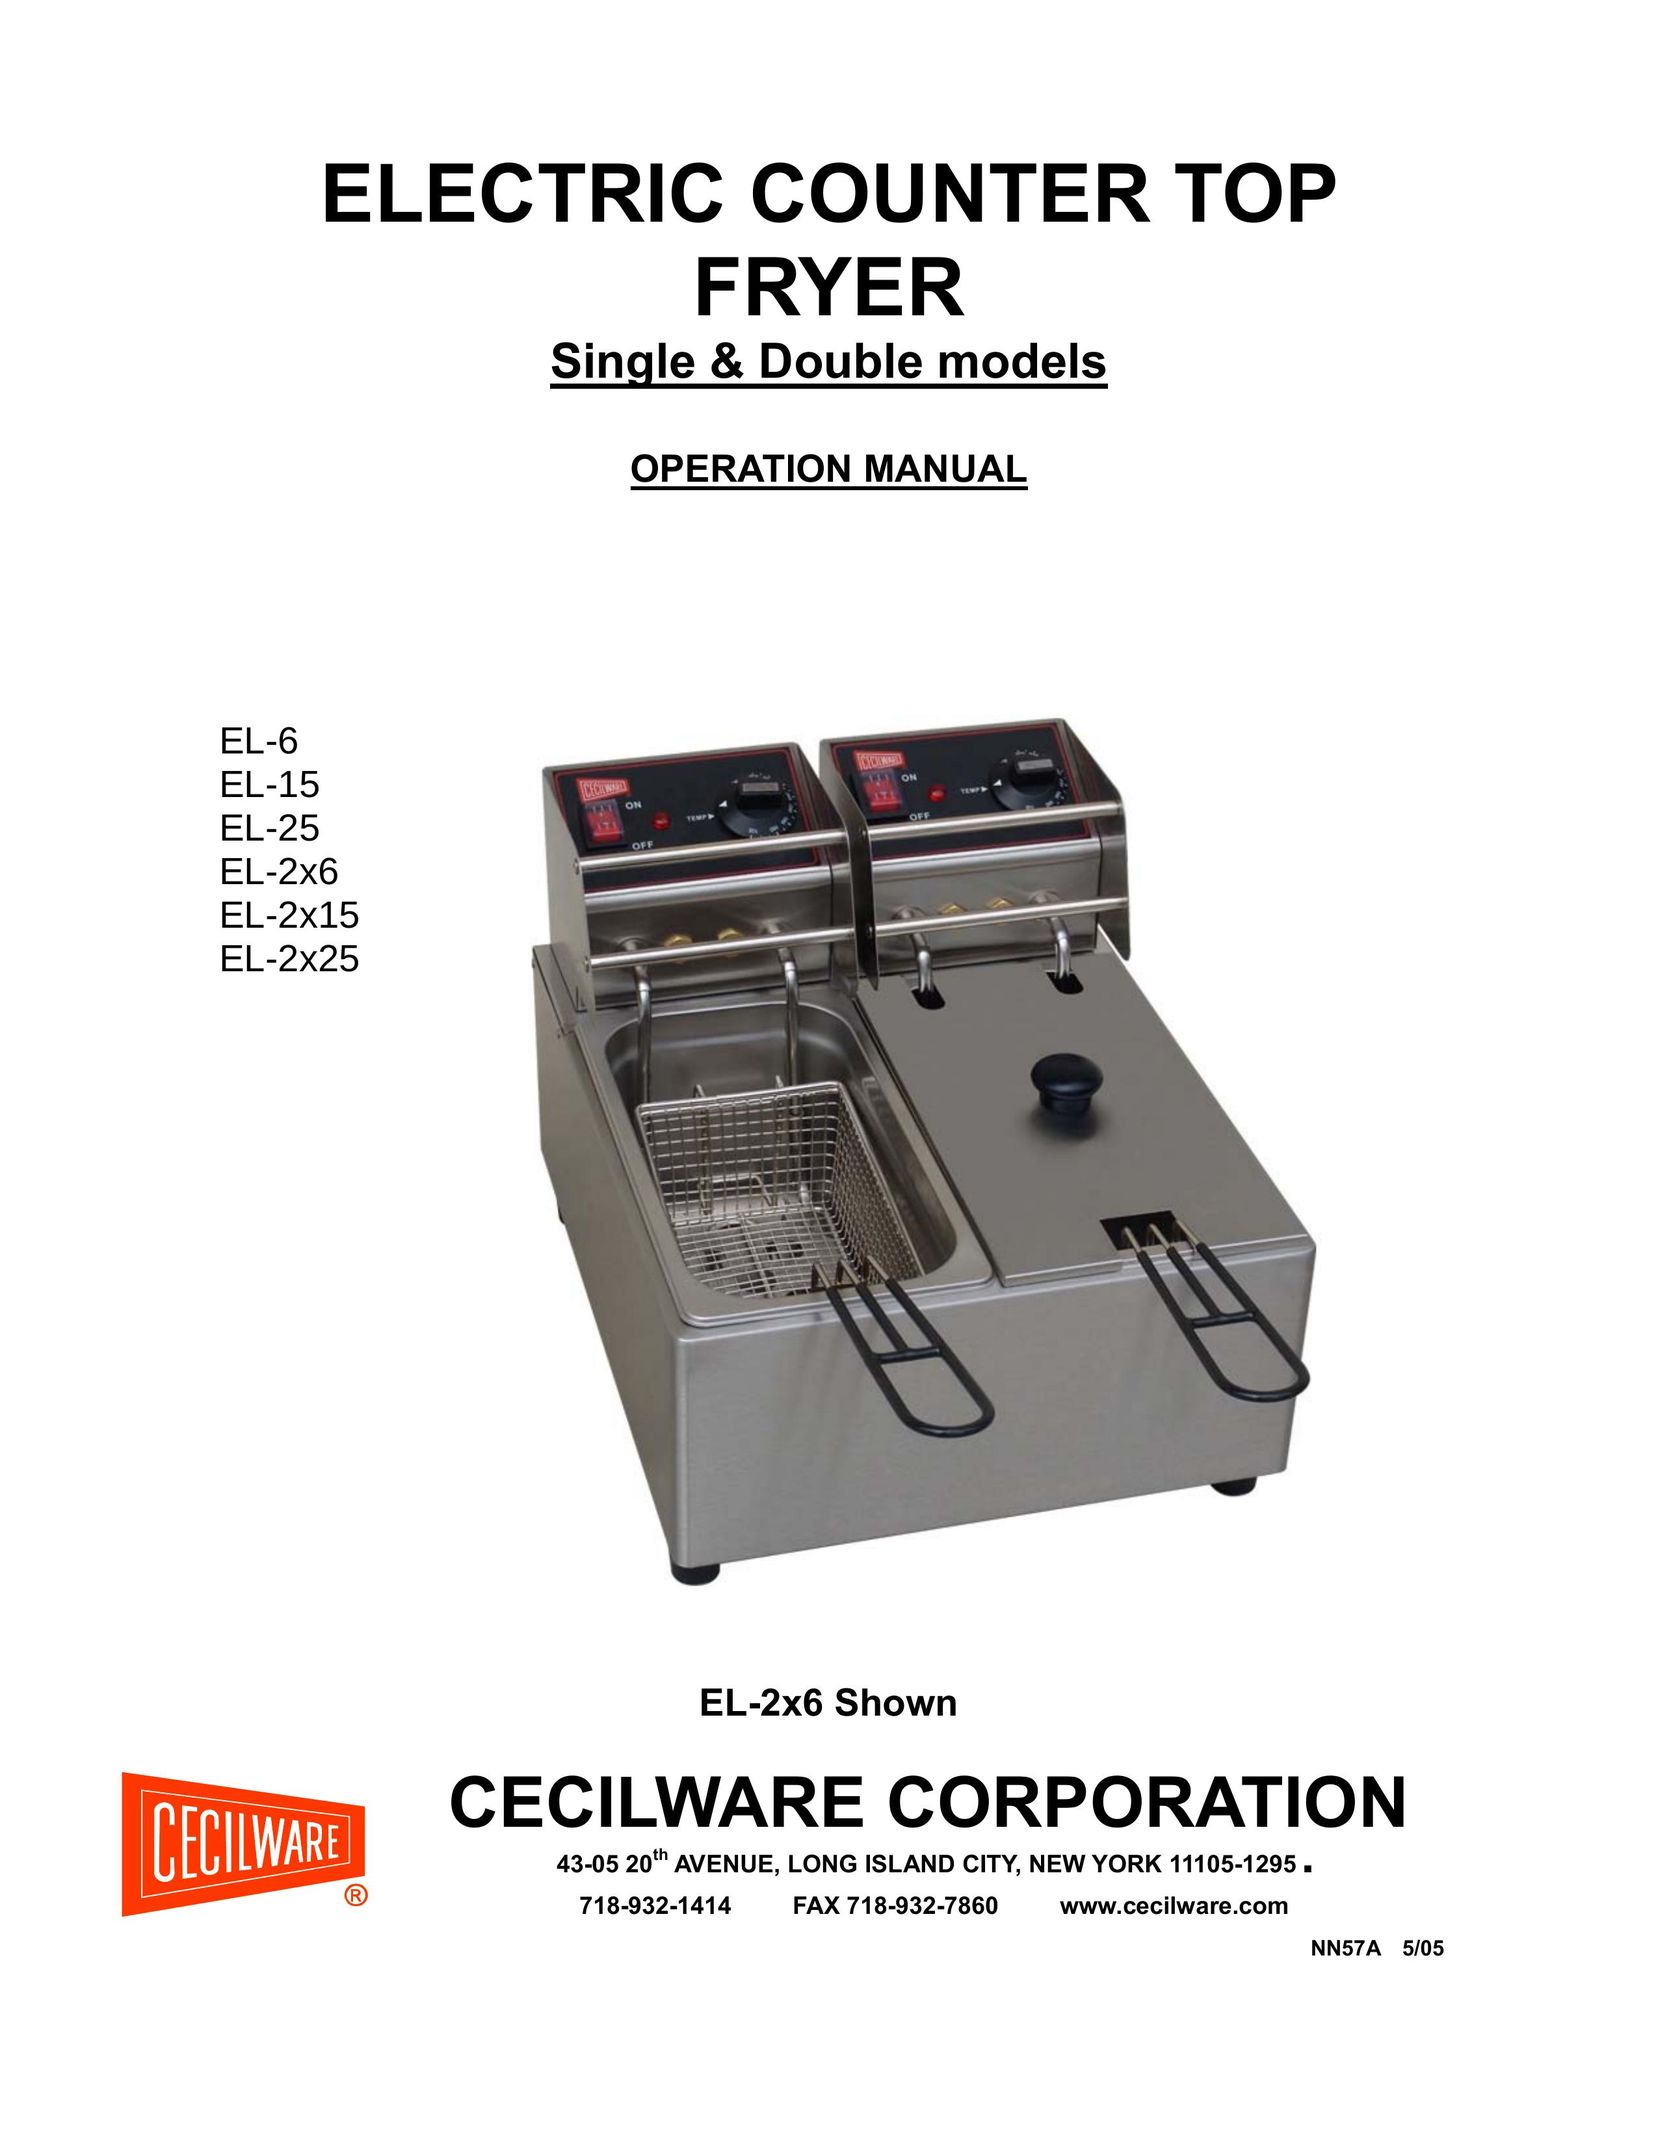 Cecilware EL-15 Fryer User Manual